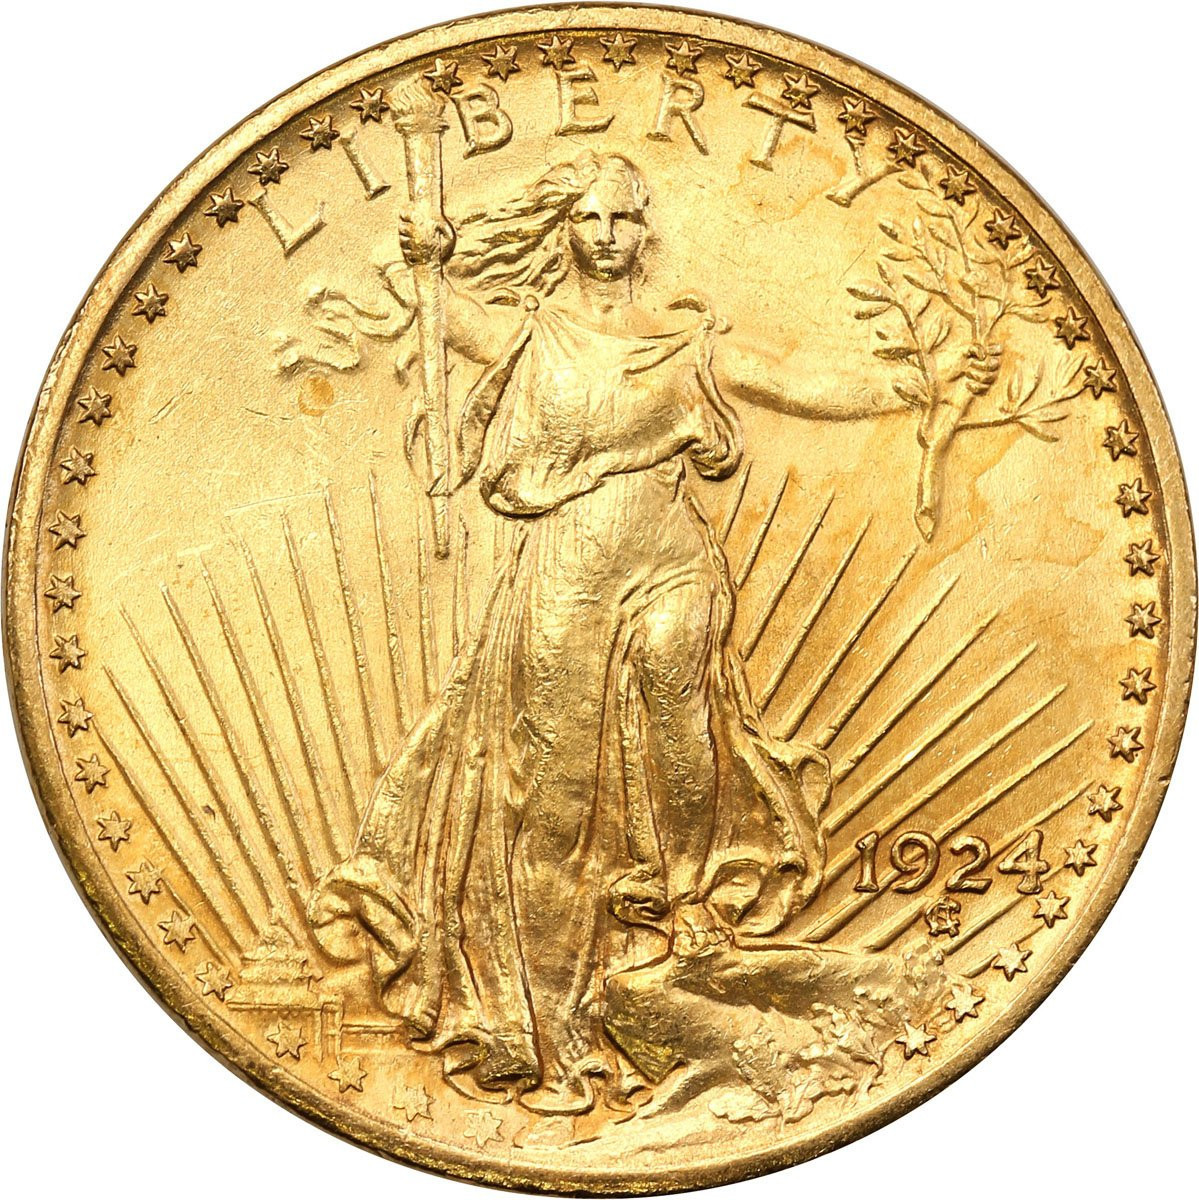 USA 20 $ dolarów 1924 Filadelfia St. Gaudens